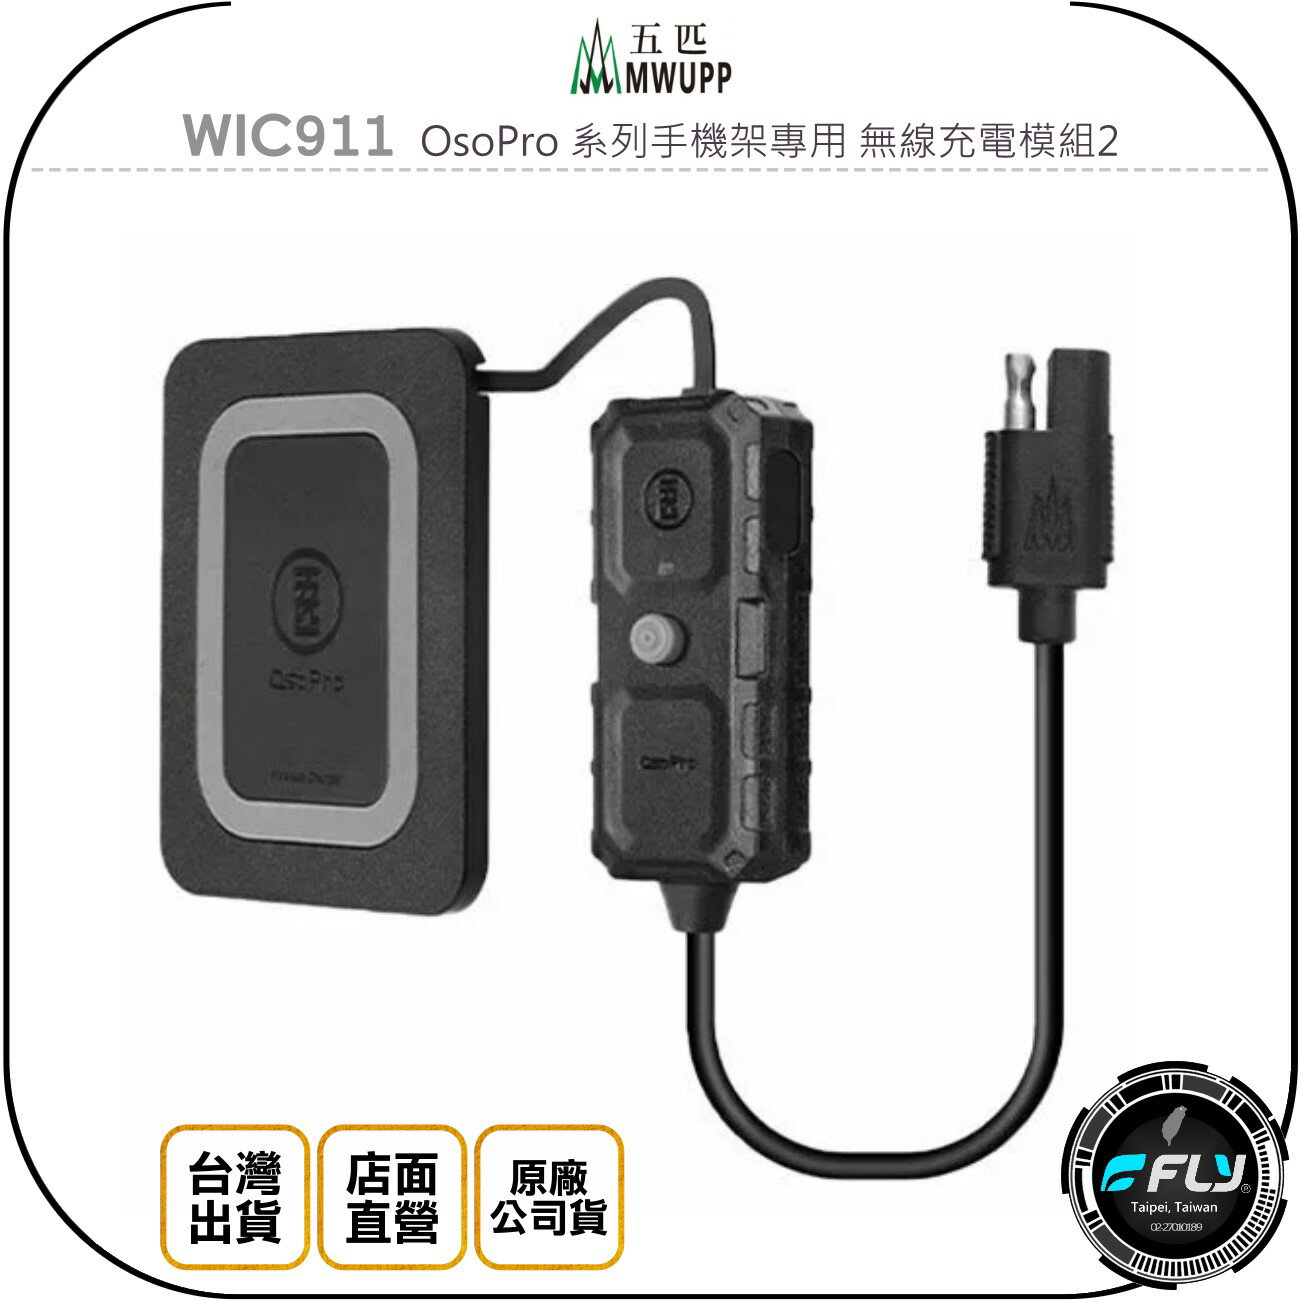 《飛翔無線3C》MWUPP 五匹 WIC911 OsoPro 系列手機架專用 無線充電模組2◉原廠公司貨